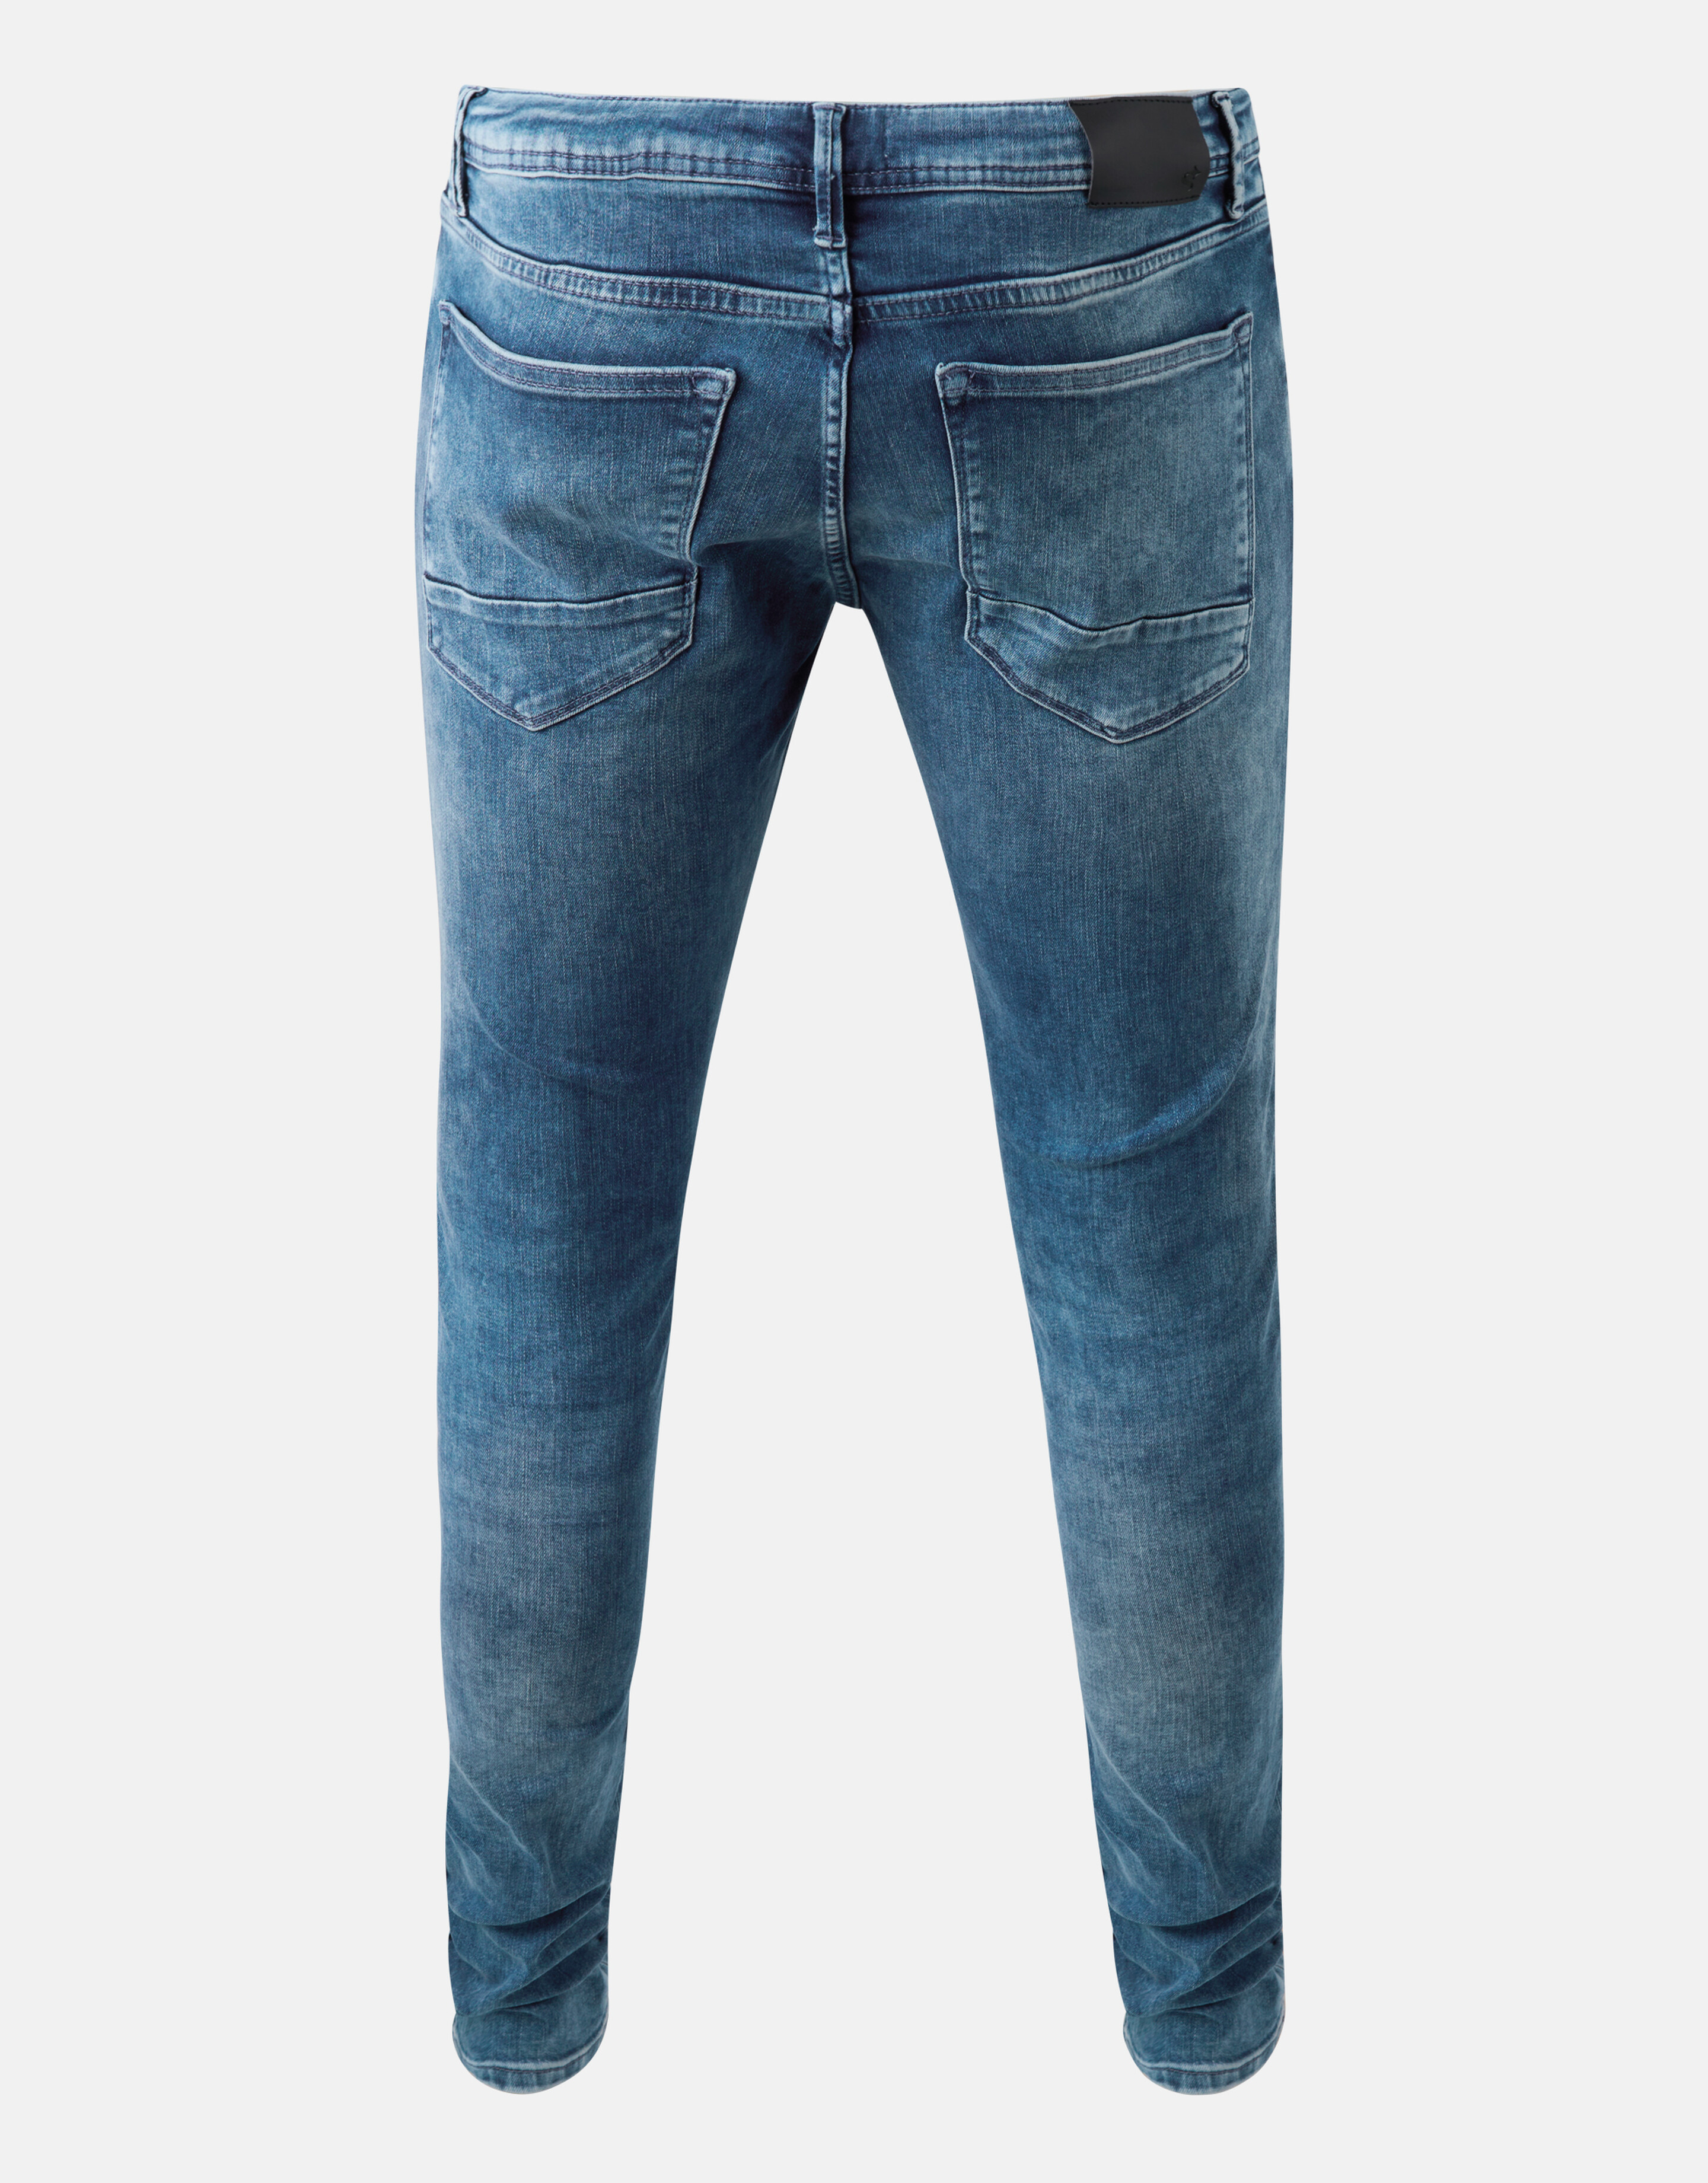 Skinny Fit Jeans Mediumstone L32 Refill